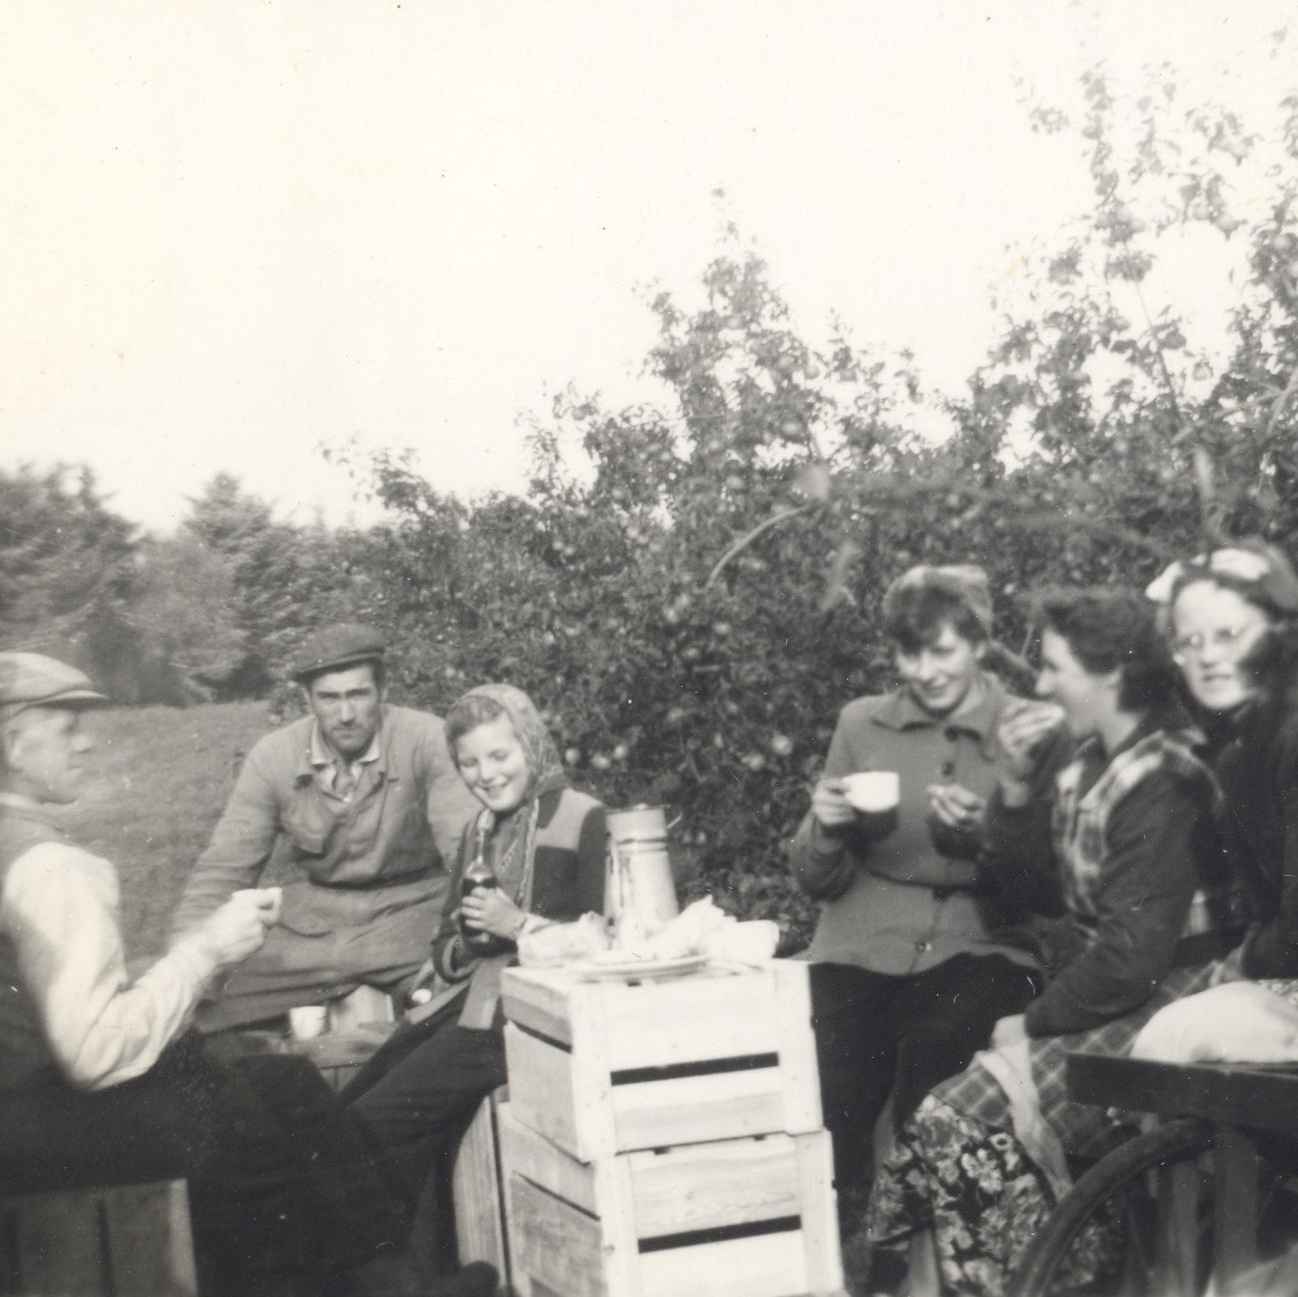 I æblerne med kaffe - f.v. Sophus Vendelev, Søren Jørgensen, Lajla, kusine Gerda, Thora Vendelev, Karen Christiansen